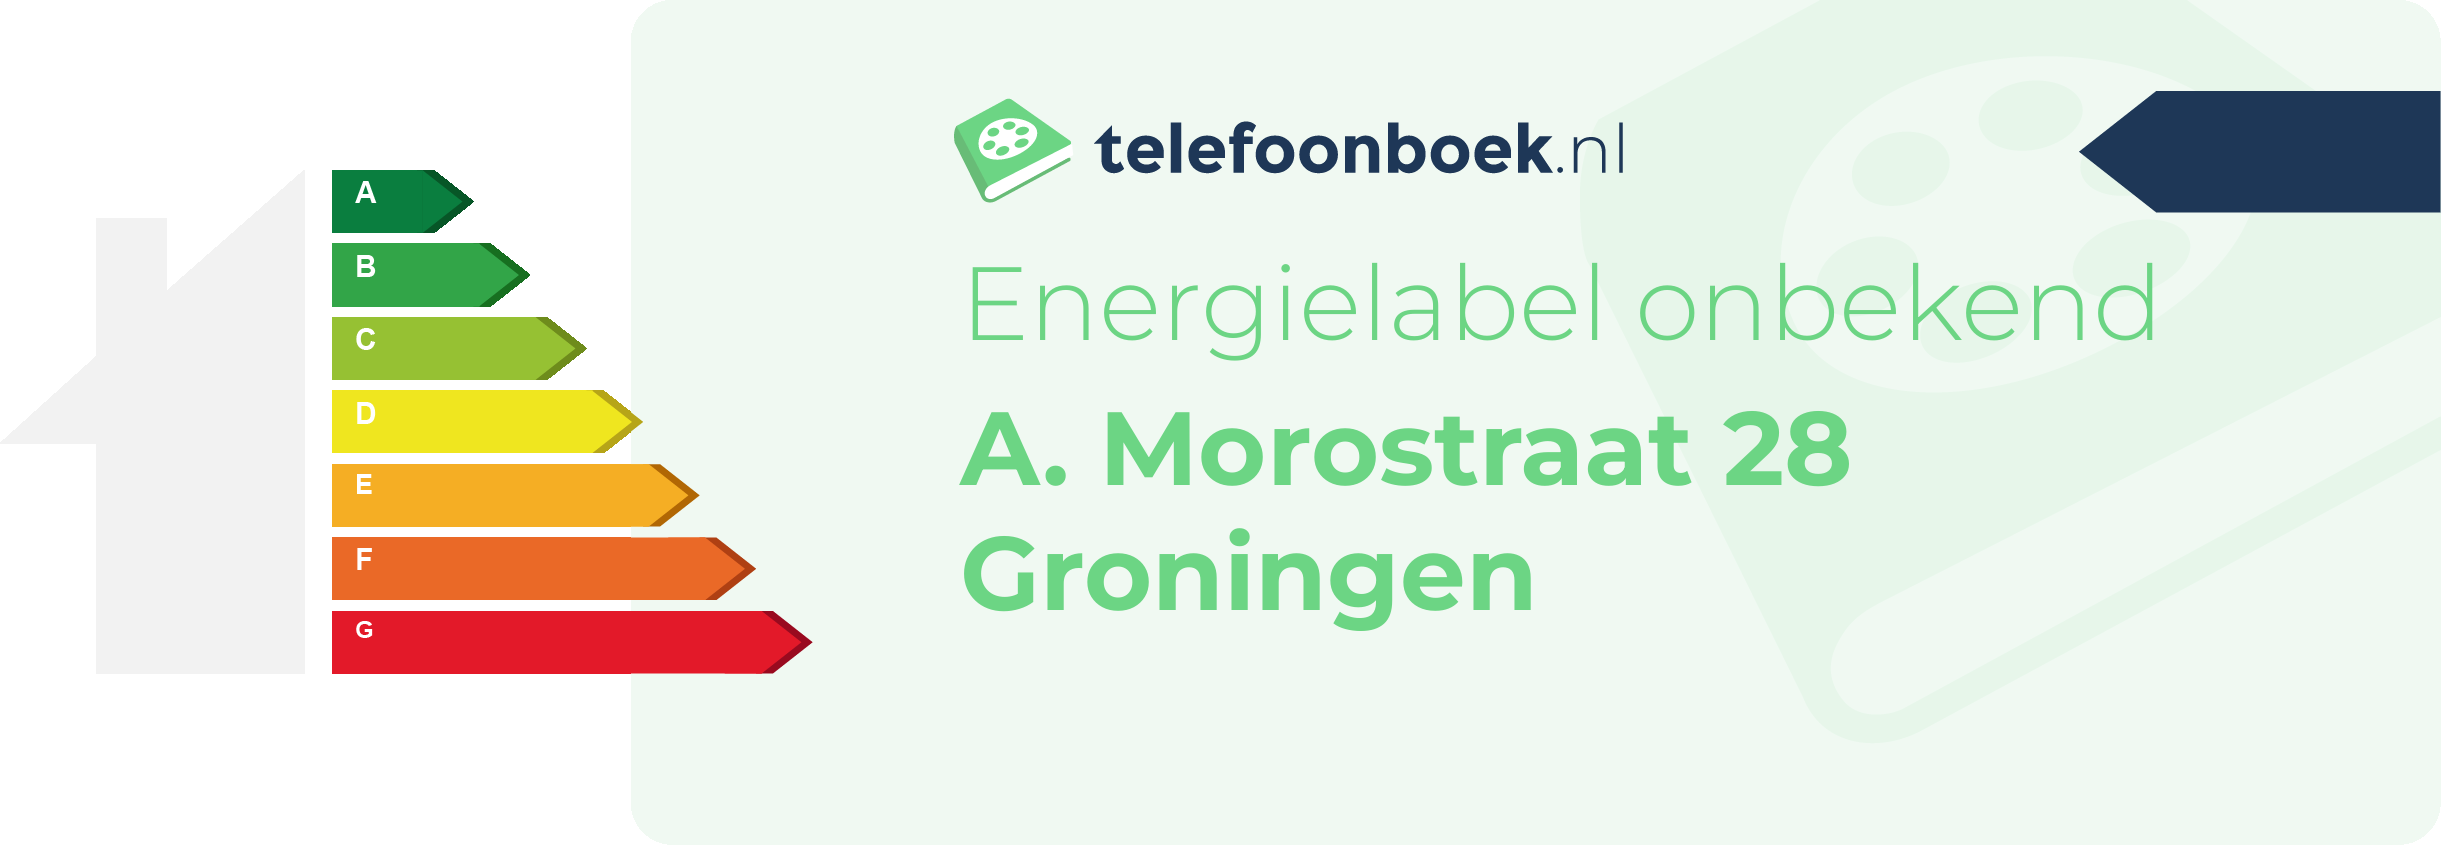 Energielabel A. Morostraat 28 Groningen